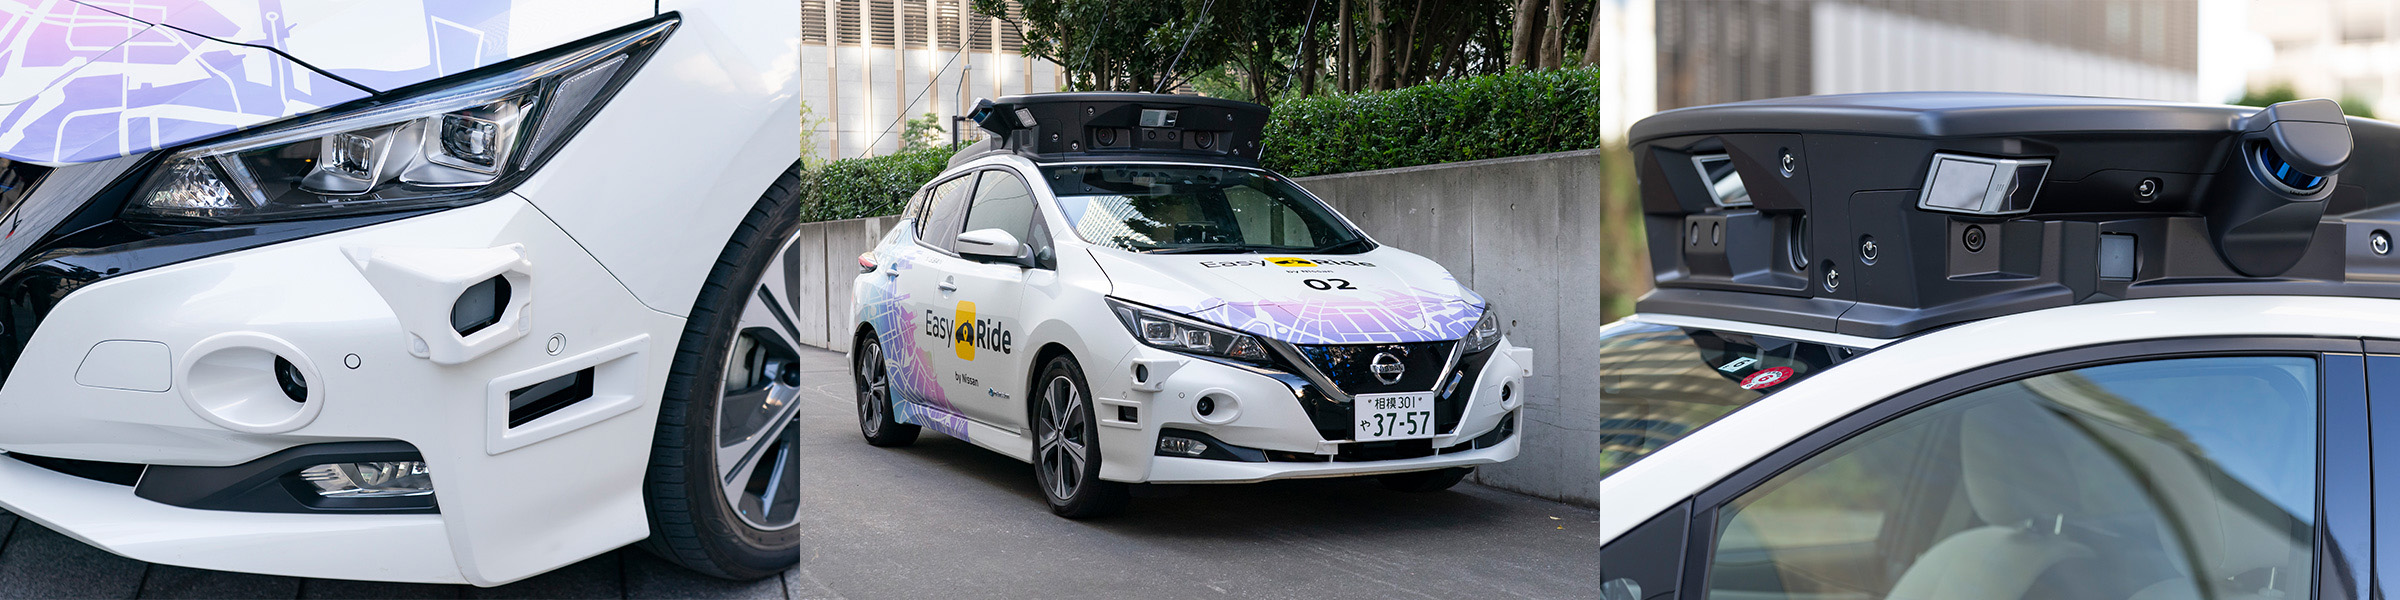 Nissan autonomous-drive mobility services